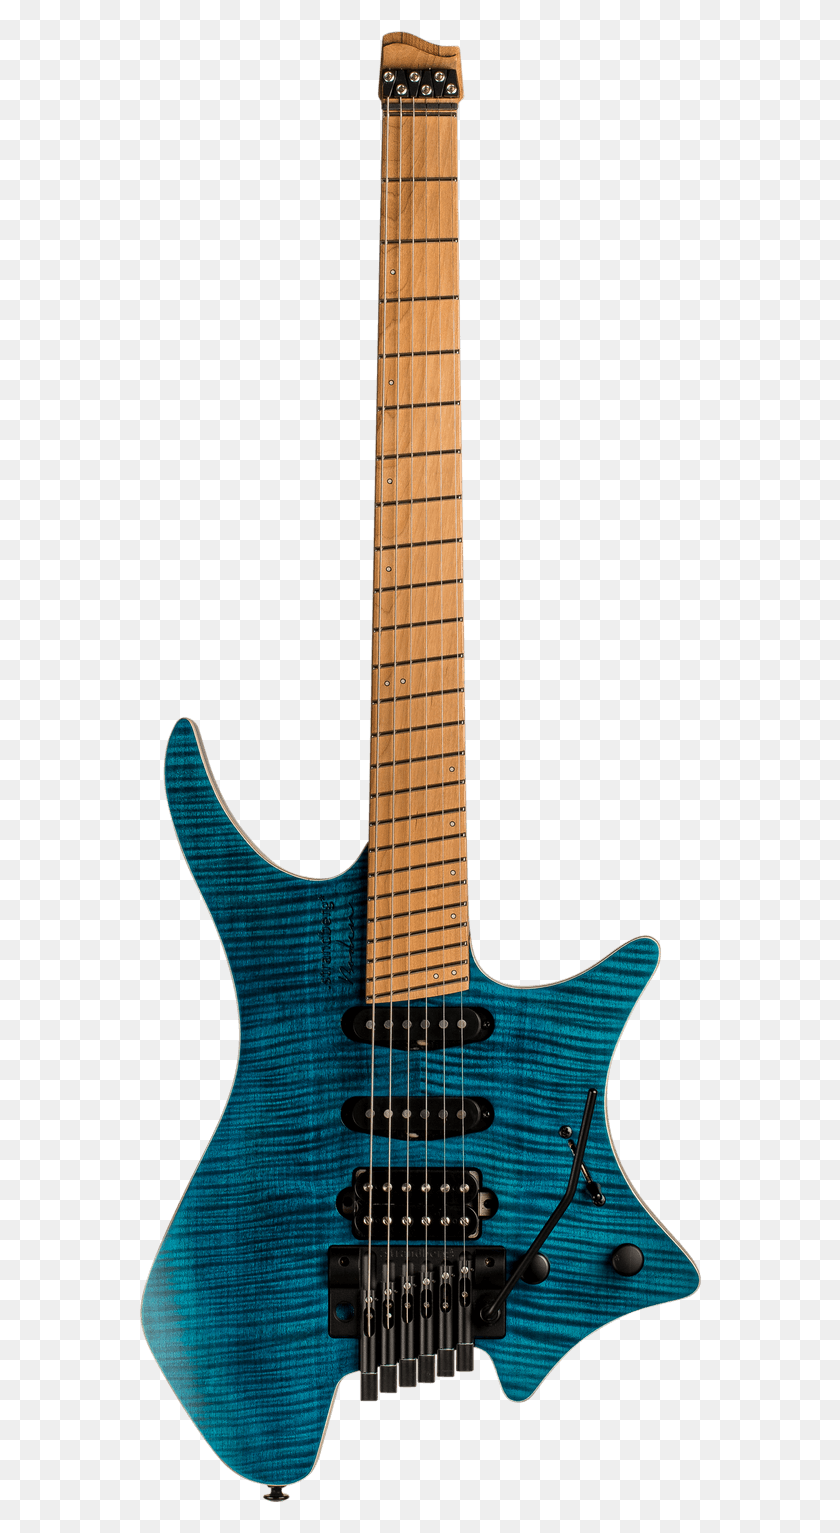 564x1473 Descargar Png Boden Standard 6 Tremolo Maple Flame Blue Strandberg Boden Prog, Guitarra, Actividades De Ocio, Instrumento Musical Hd Png